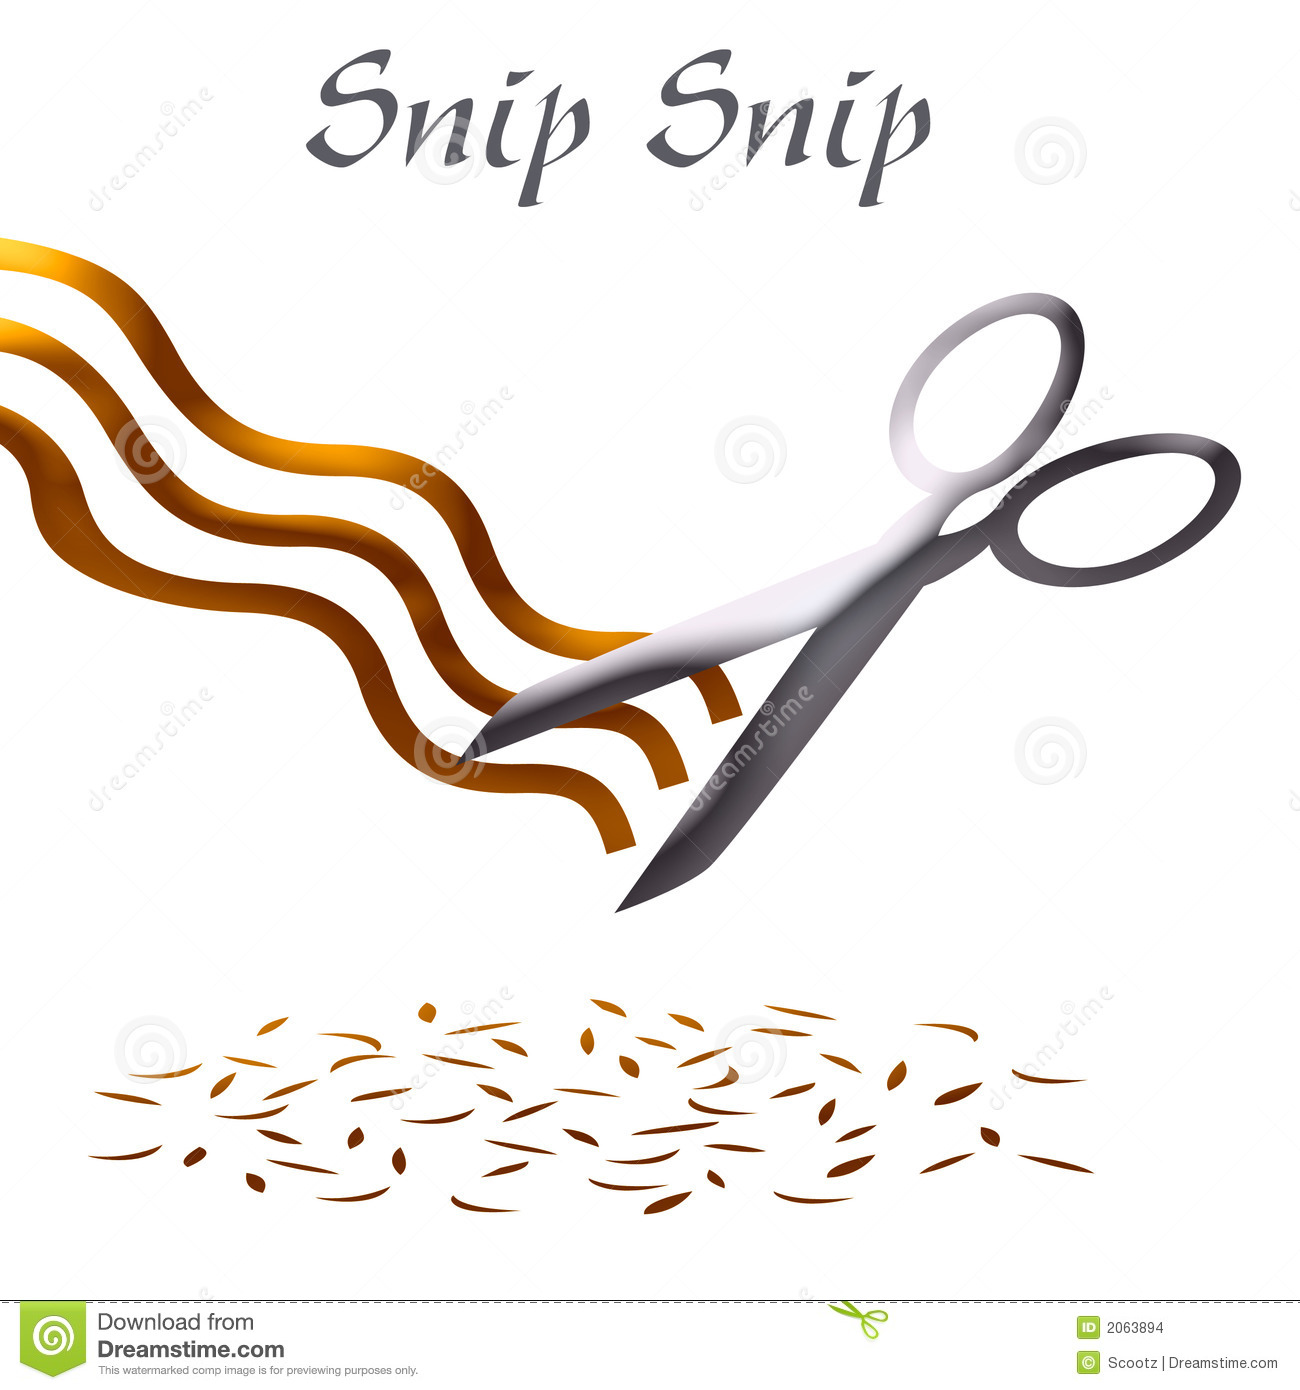 Haircut clip art - Hair Cut Clip Art